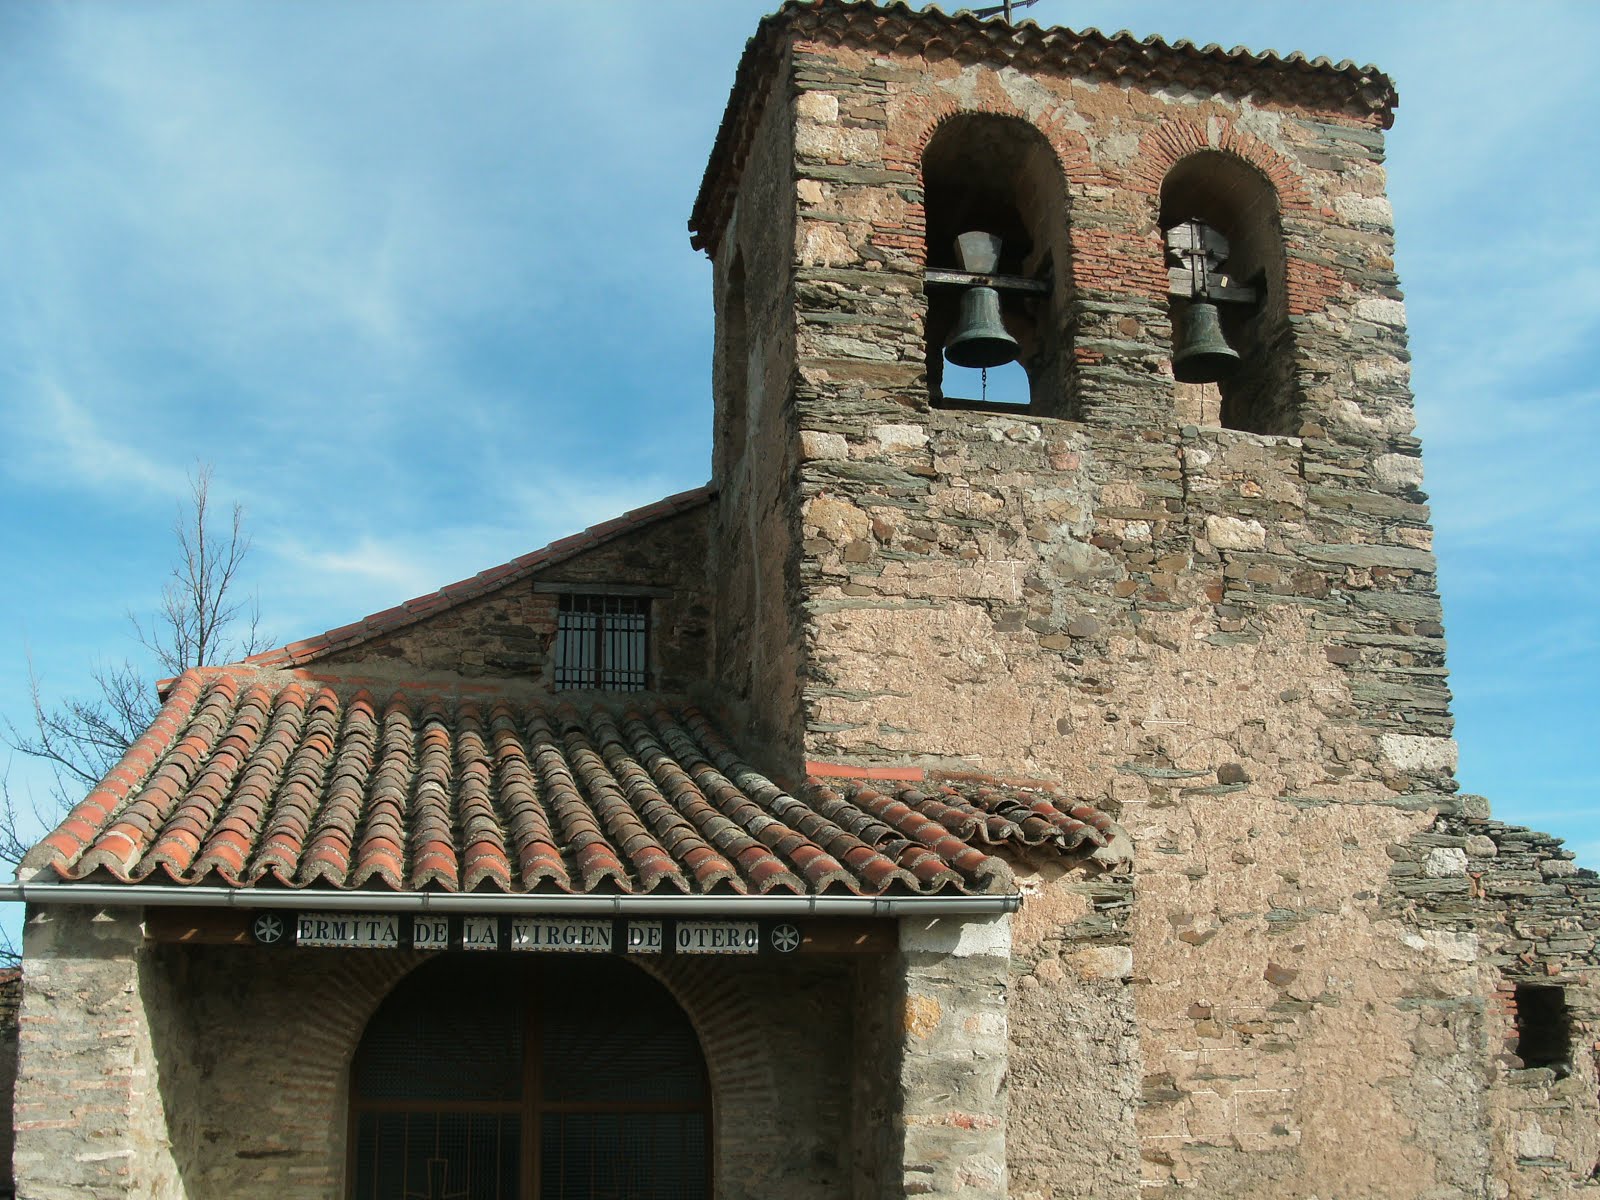 Vista frontal de la ermita Virgen de Otero